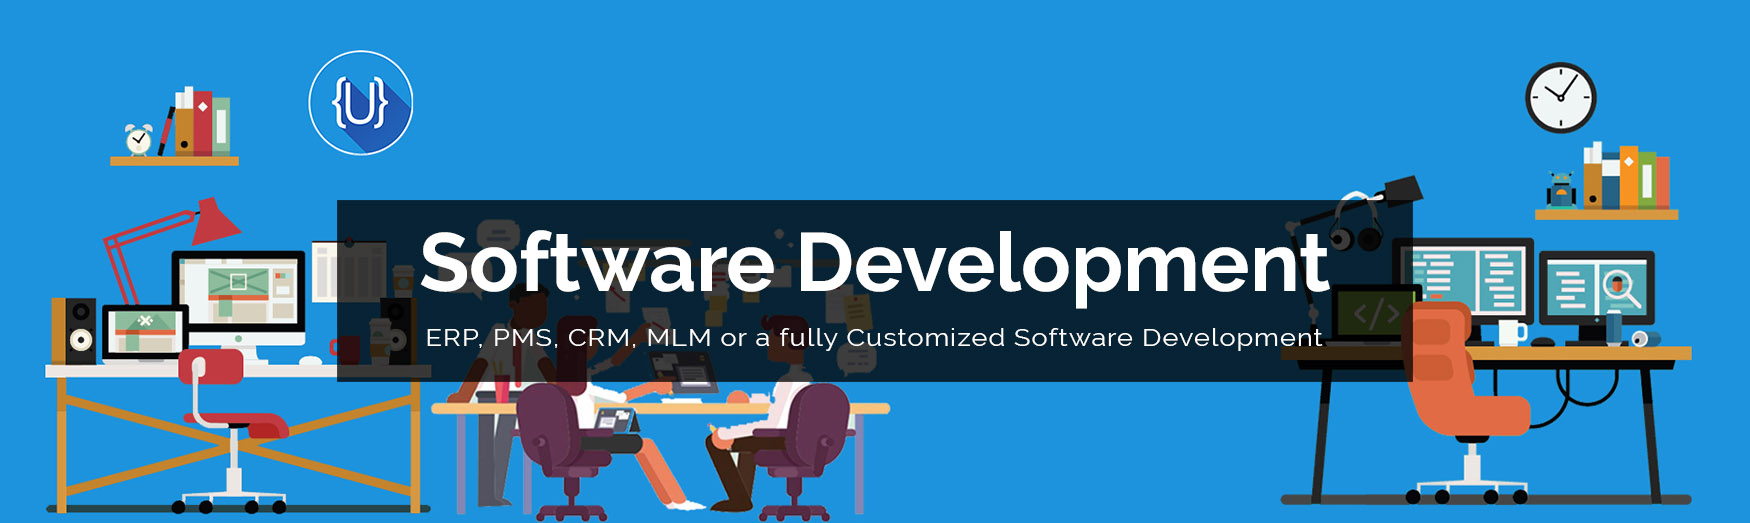 ujudebug software development